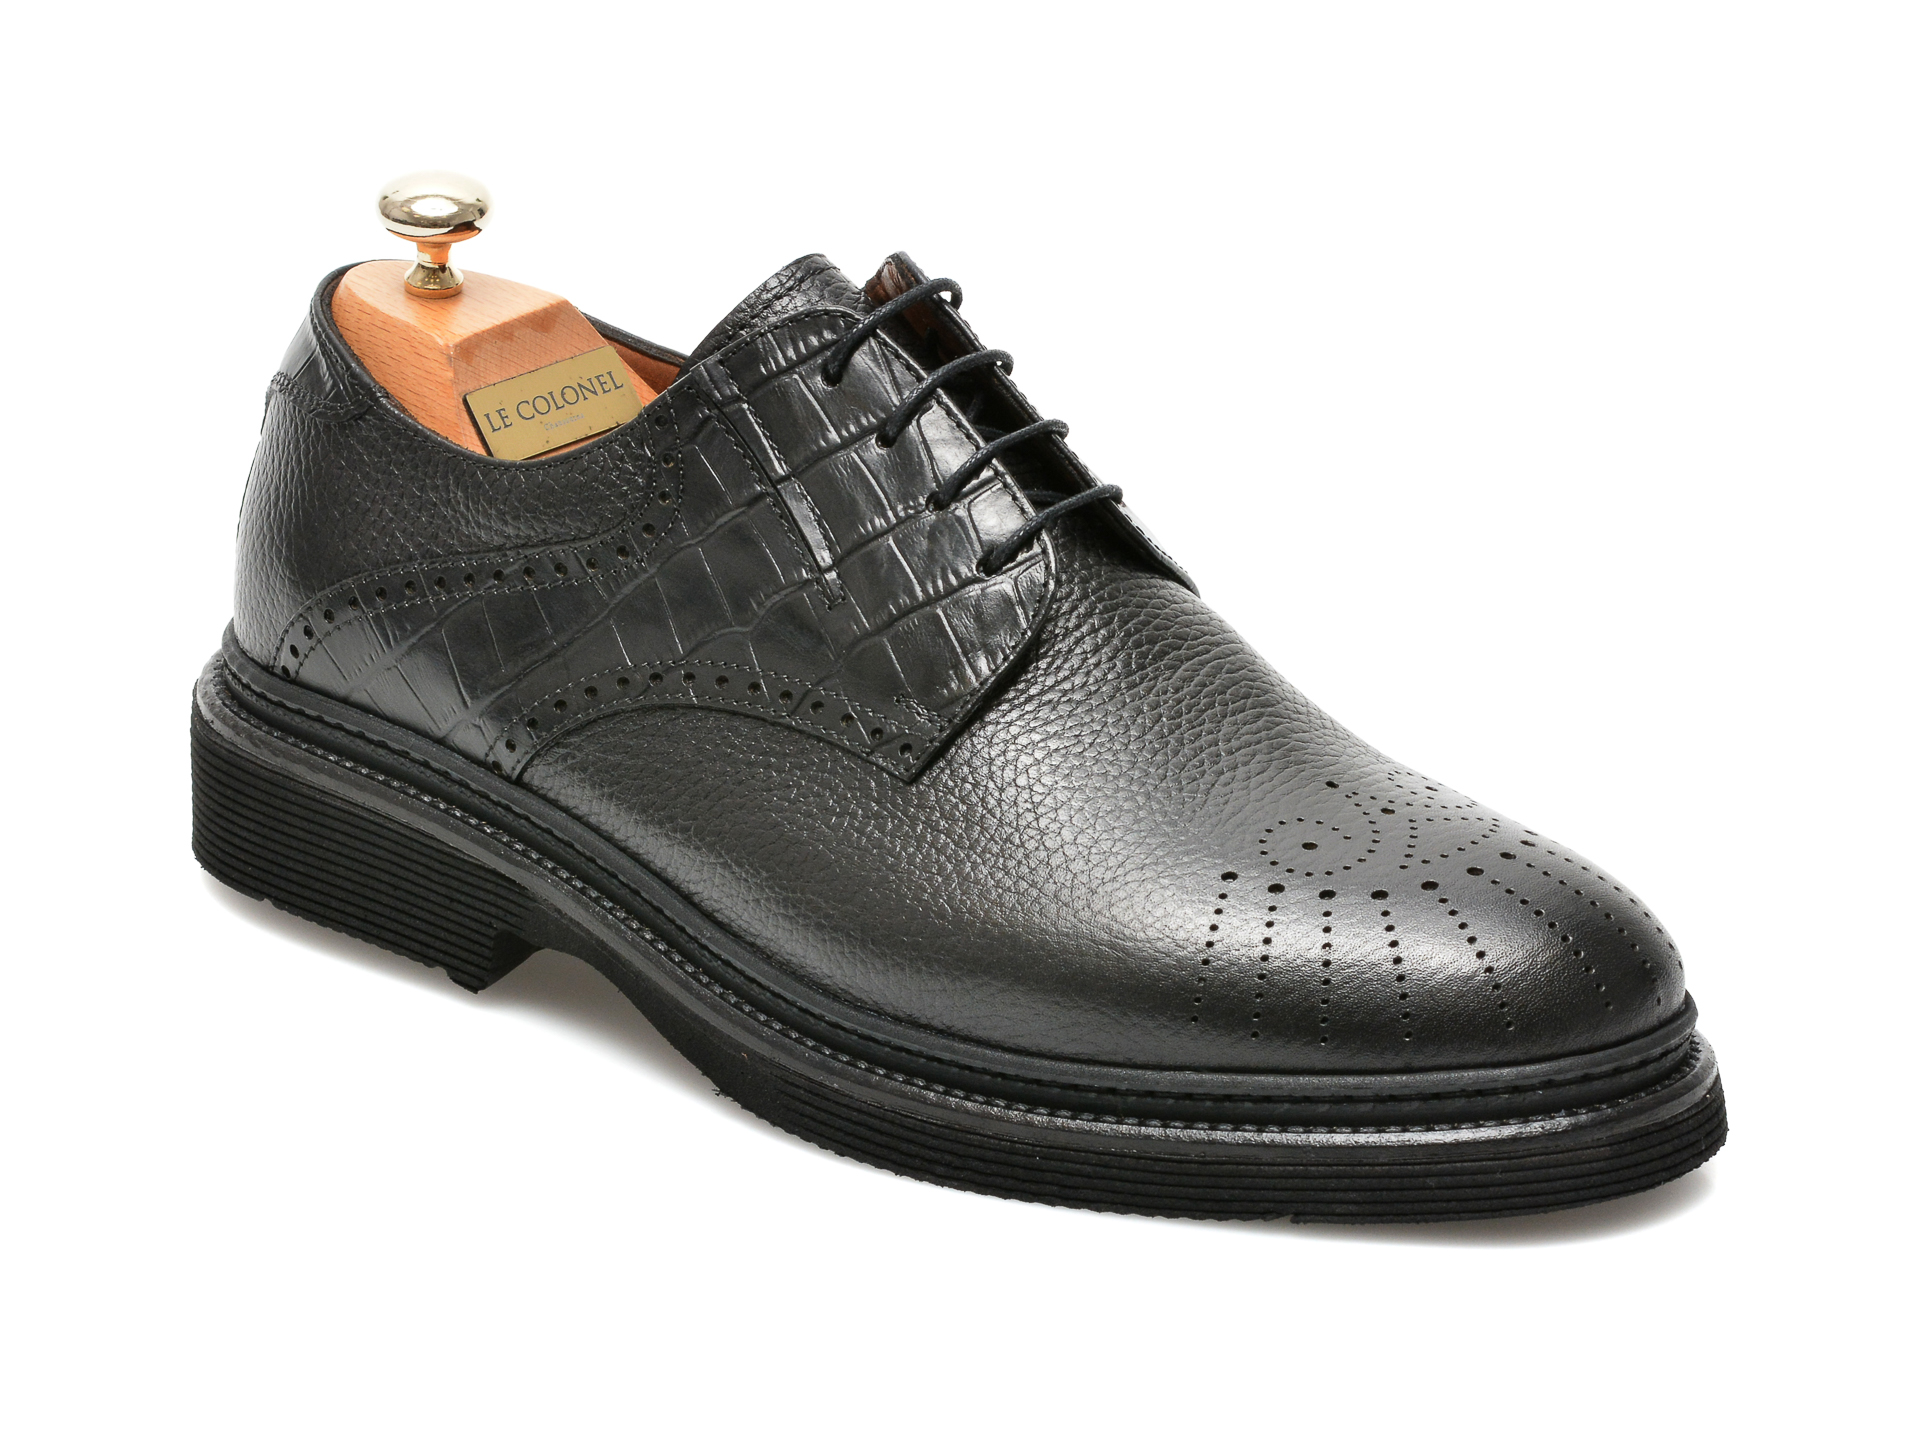 Pantofi LE COLONEL negri, 61722, din piele naturala Le Colonel Le Colonel